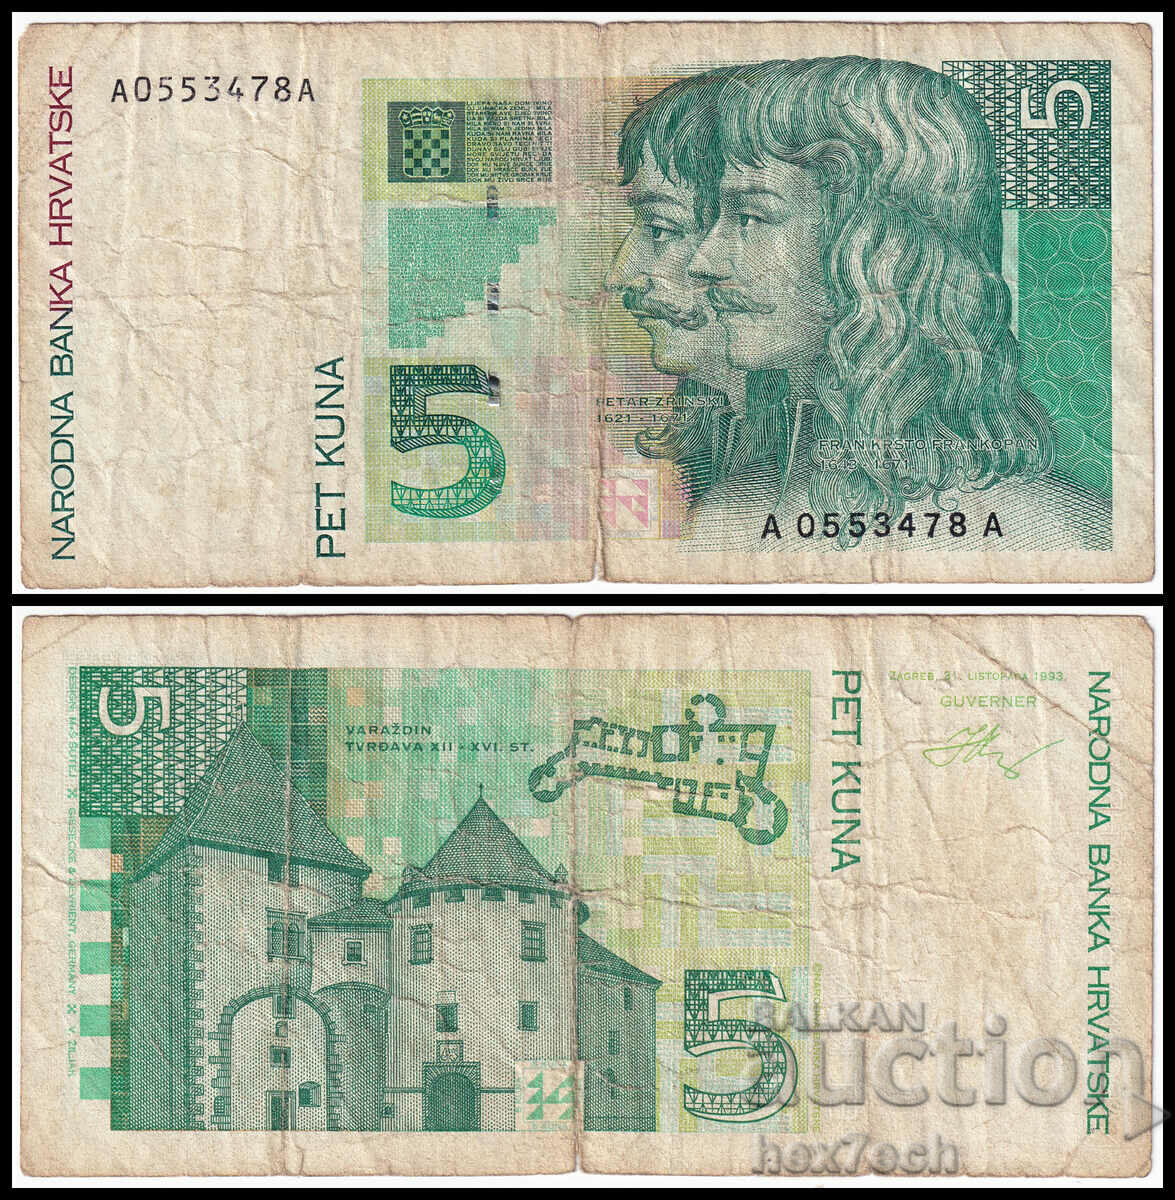 ❤️ ⭐ Croația 1993 5 kuna ⭐ ❤️